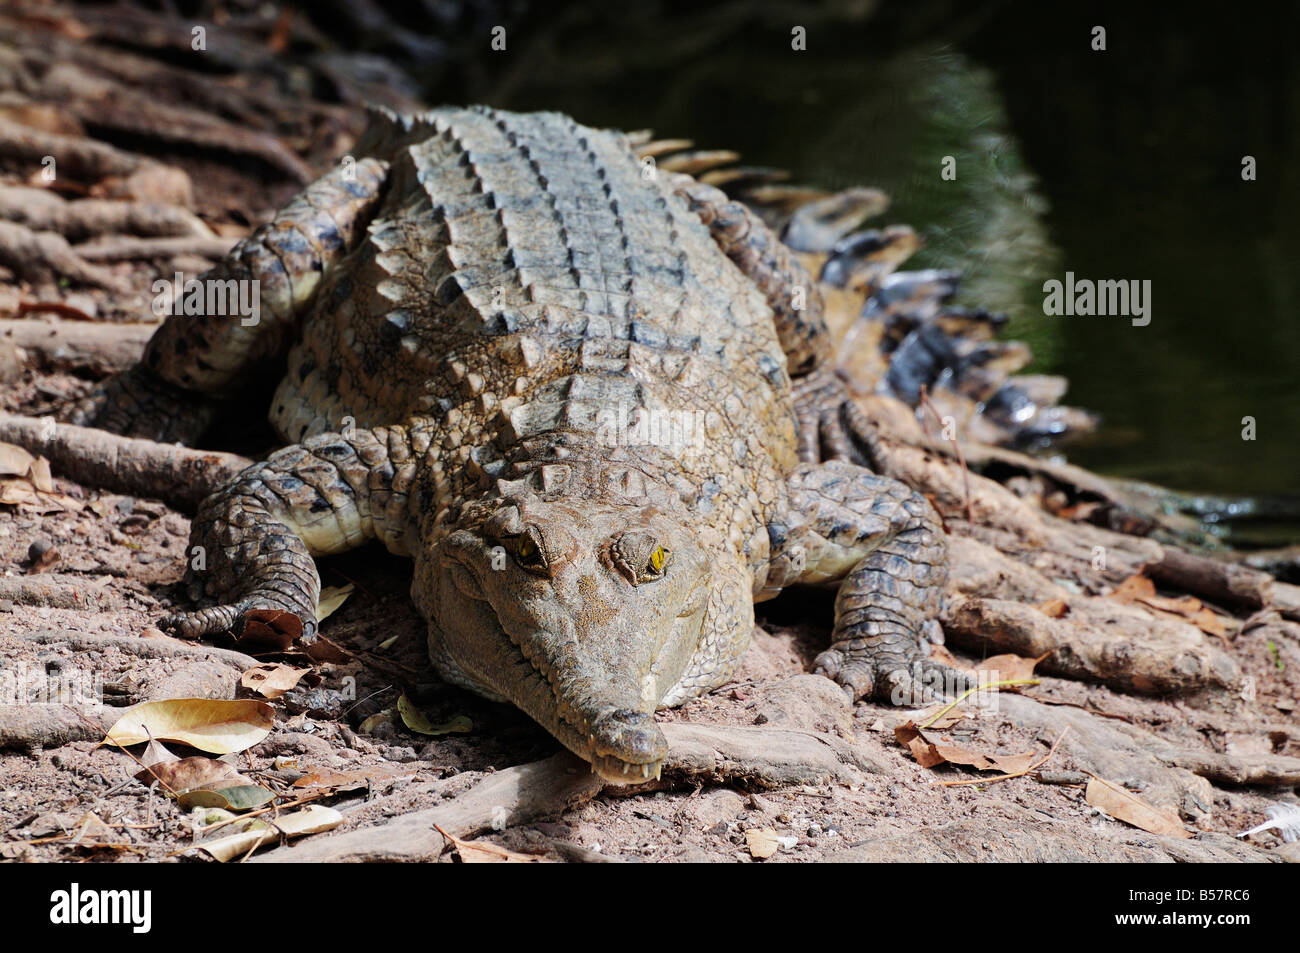 Saltwater crocodile, Territoire du Nord, Australie, Pacifique Banque D'Images